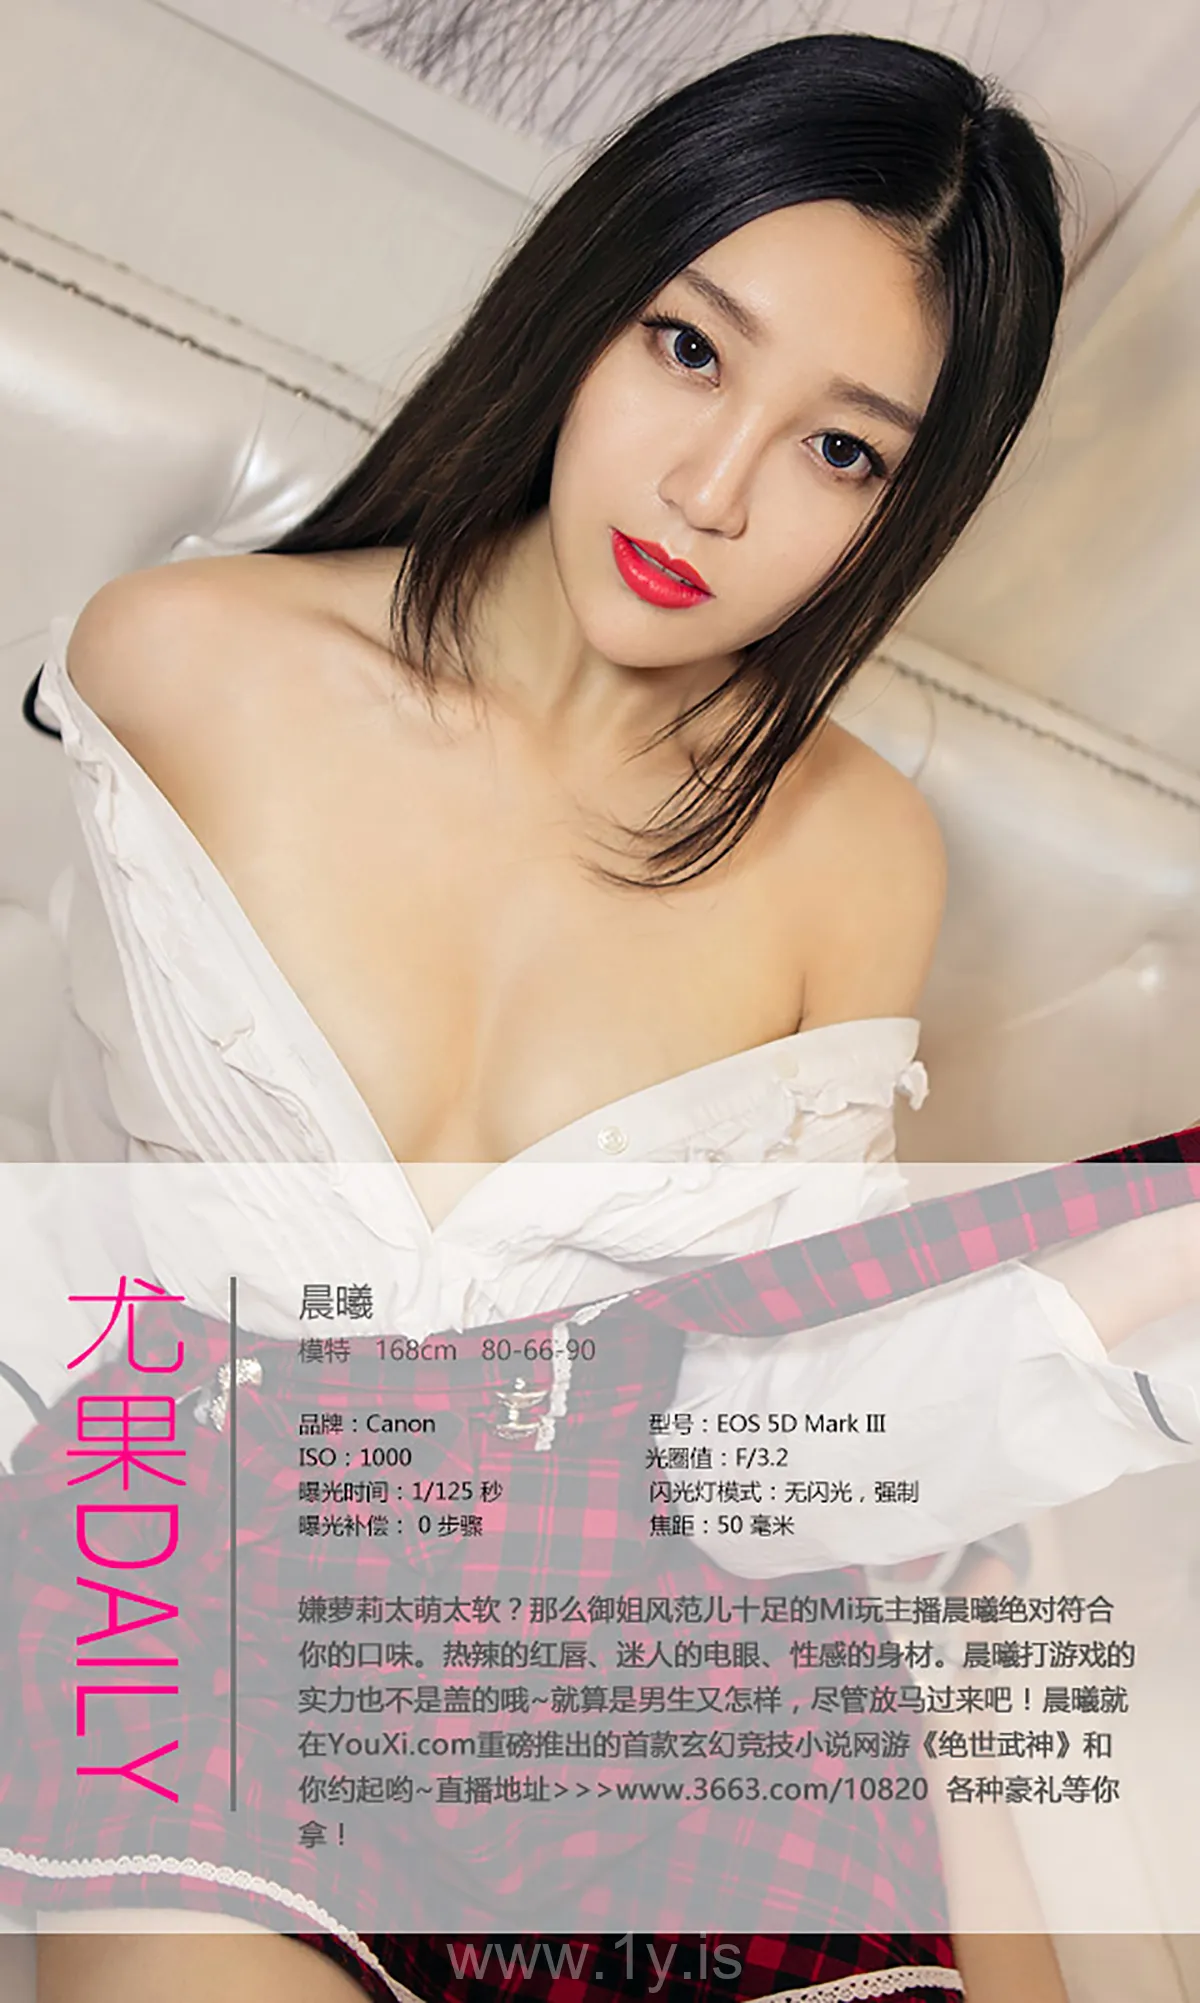 UGIRLS NO.445 Stunning & Pretty Chinese Chick 晨曦